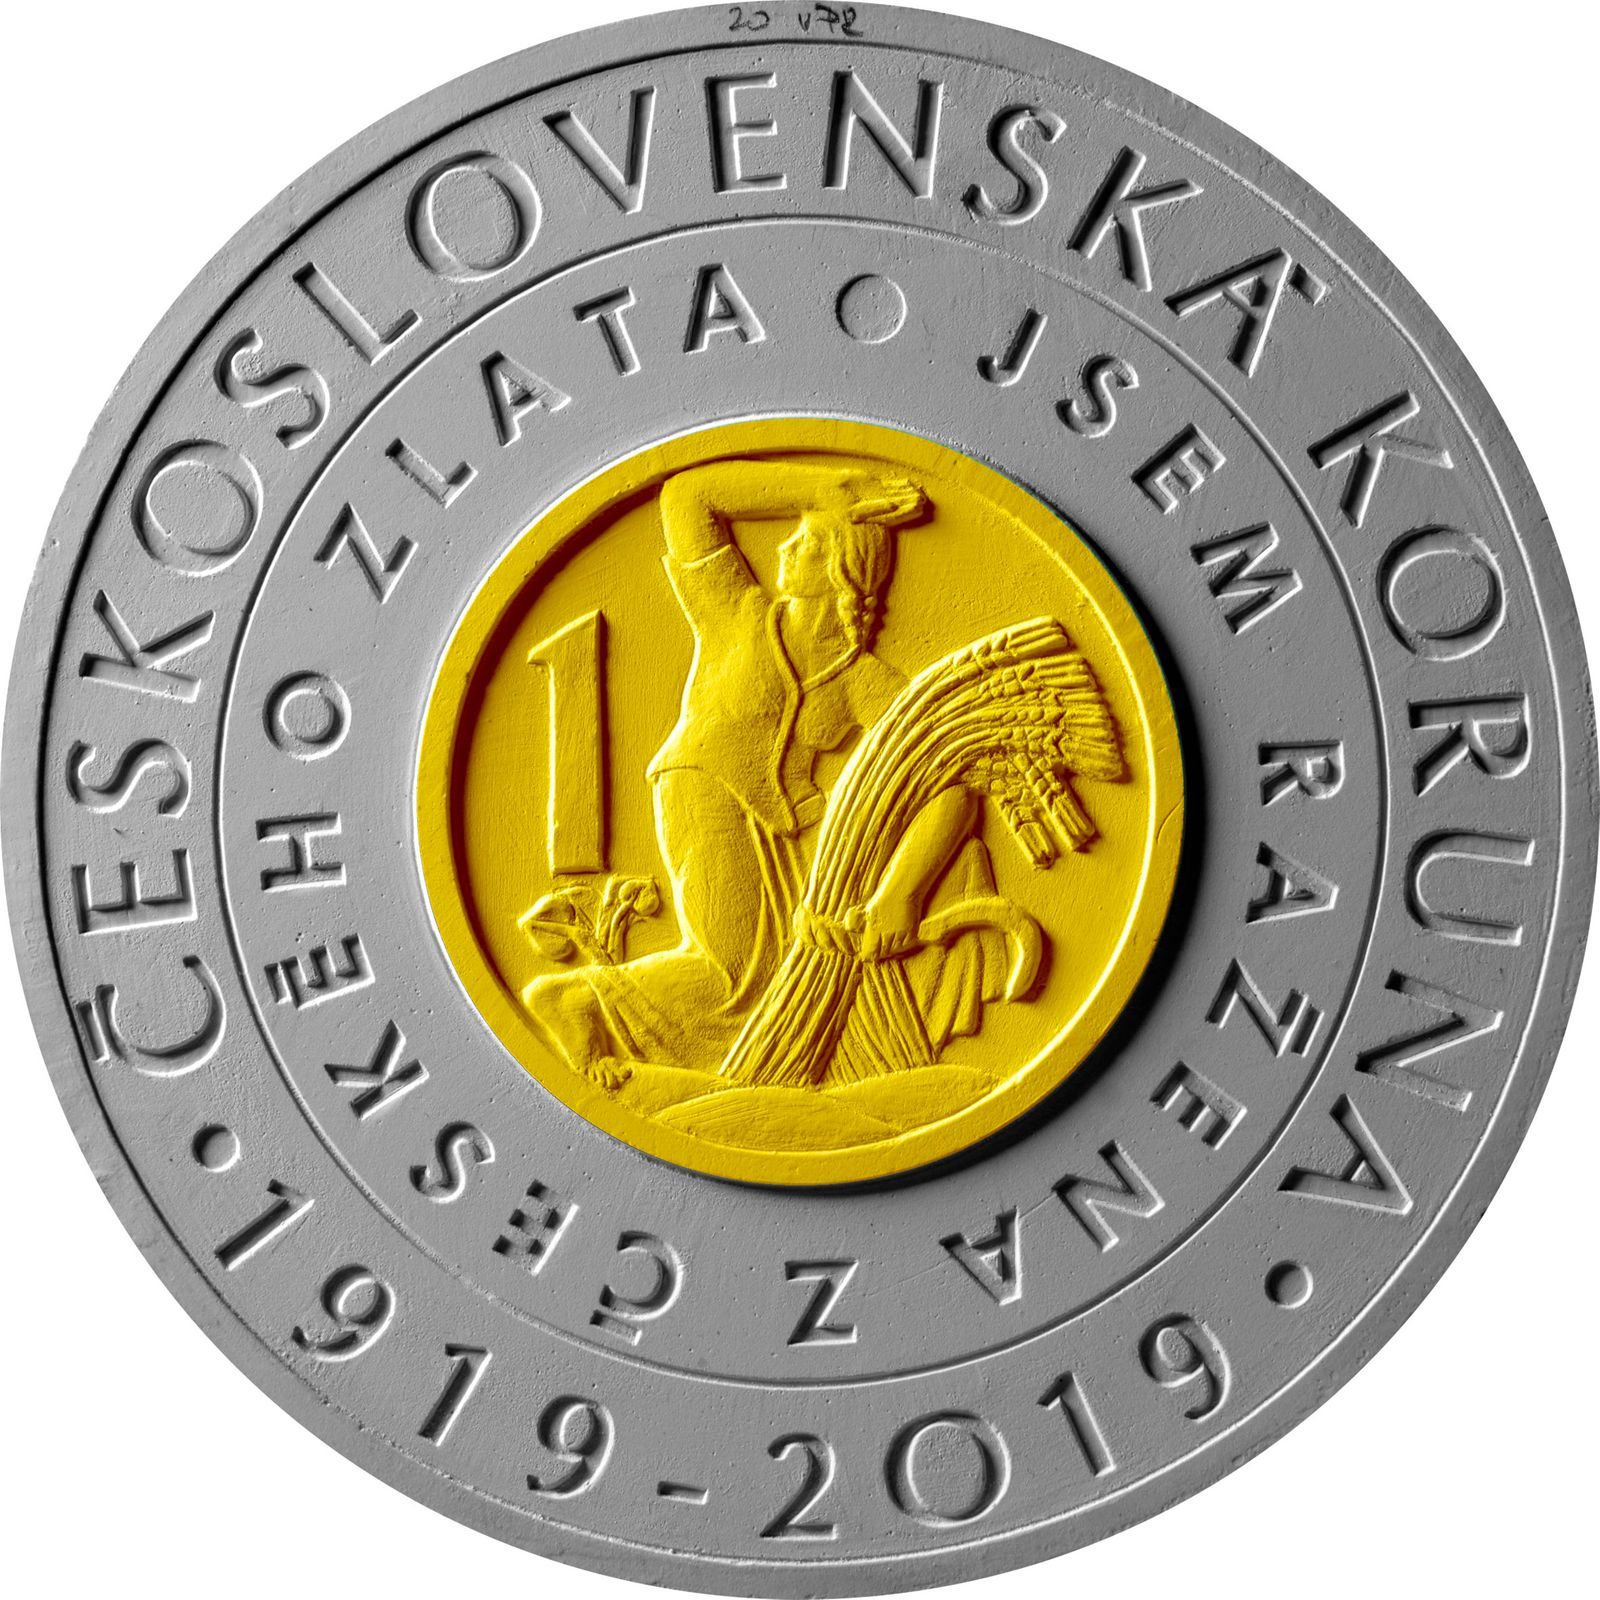 Mince vydané ke 100. výročí zavedení československé koruny